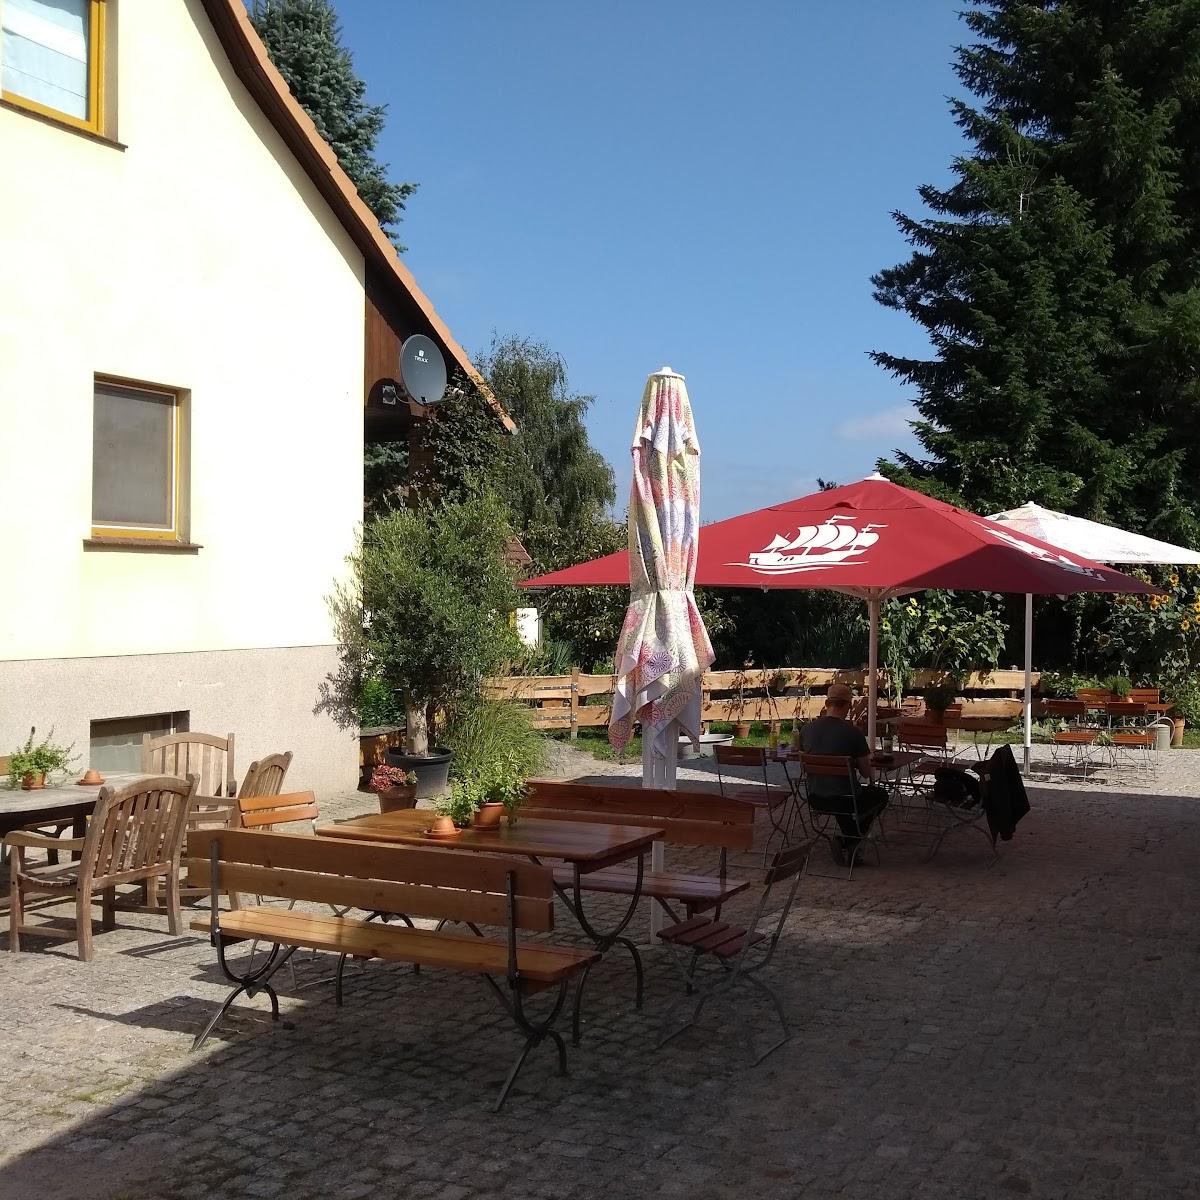 Restaurant "Alte Tischlerei" in Rechlin